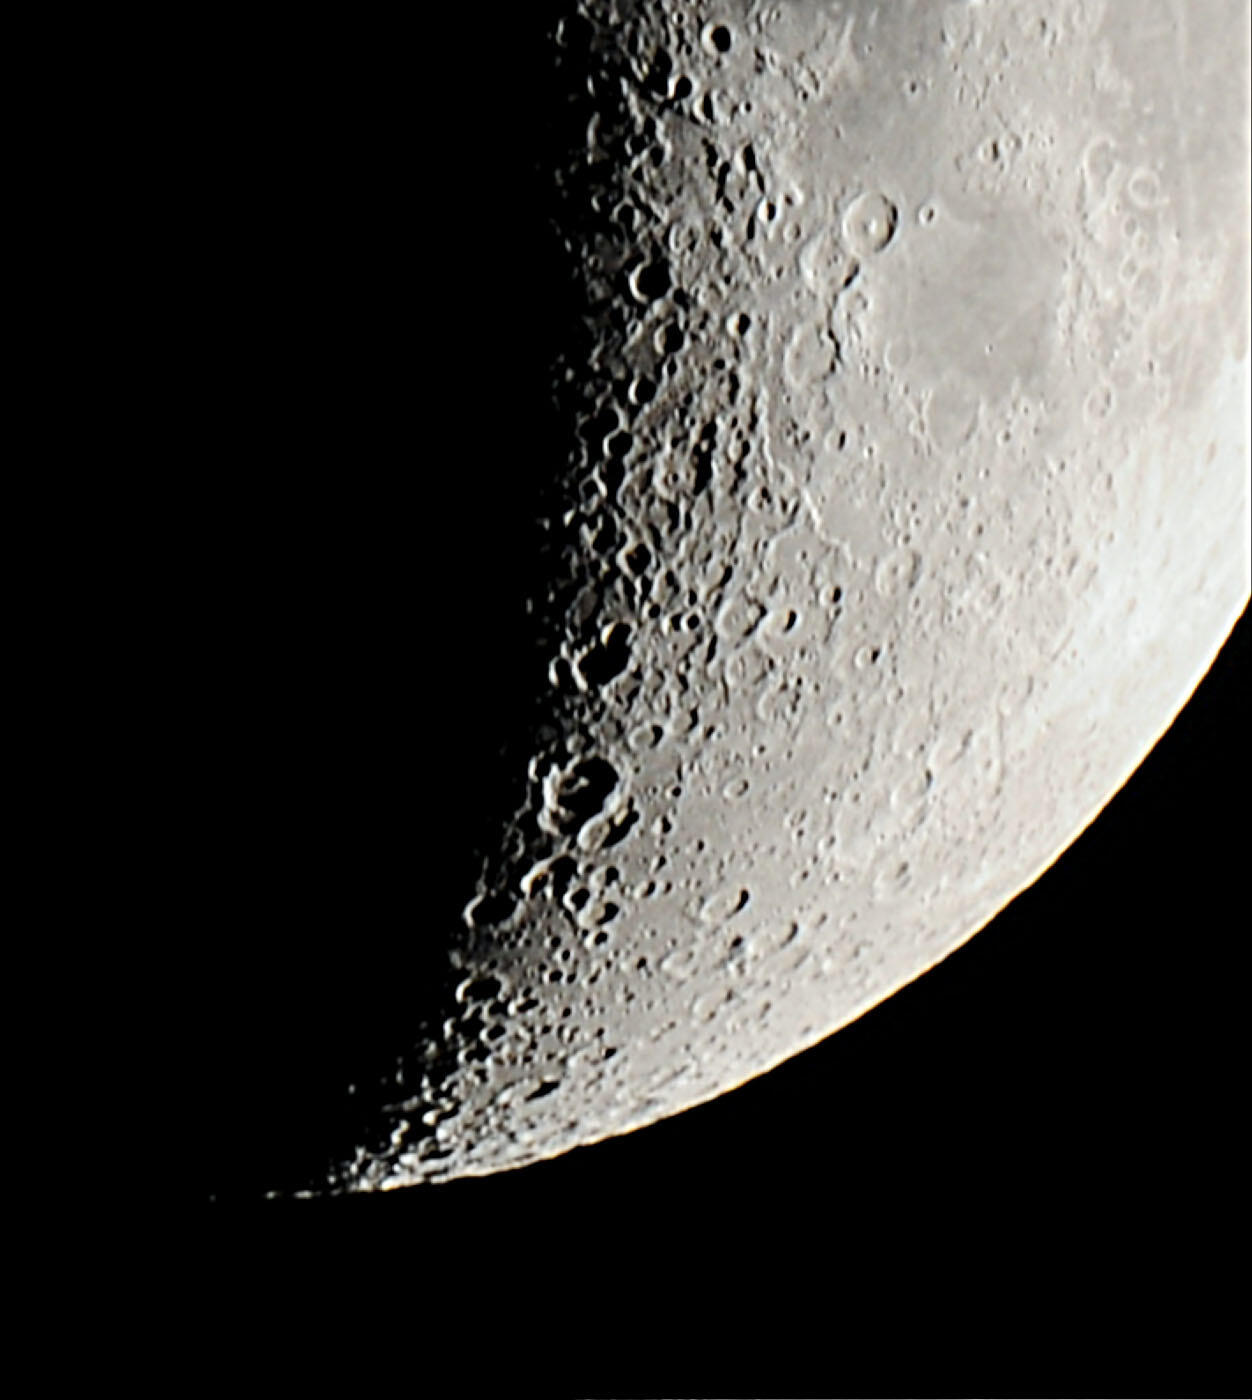 65㎝望遠鏡で覗いた月